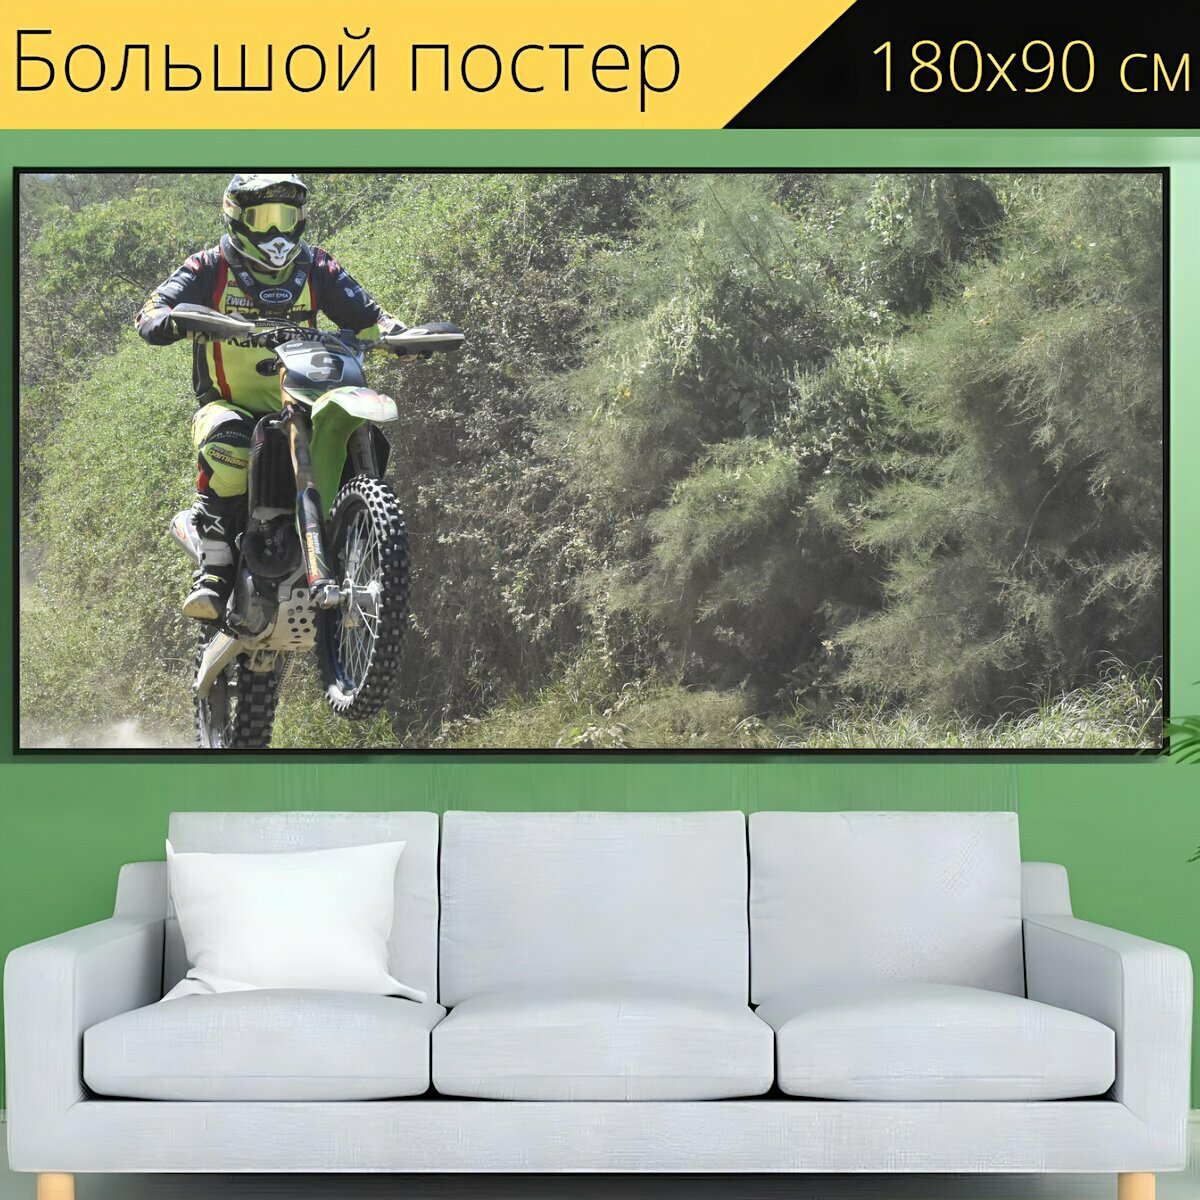 Большой постер "Мотоцикл, мотокросс, мото" 180 x 90 см. для интерьера